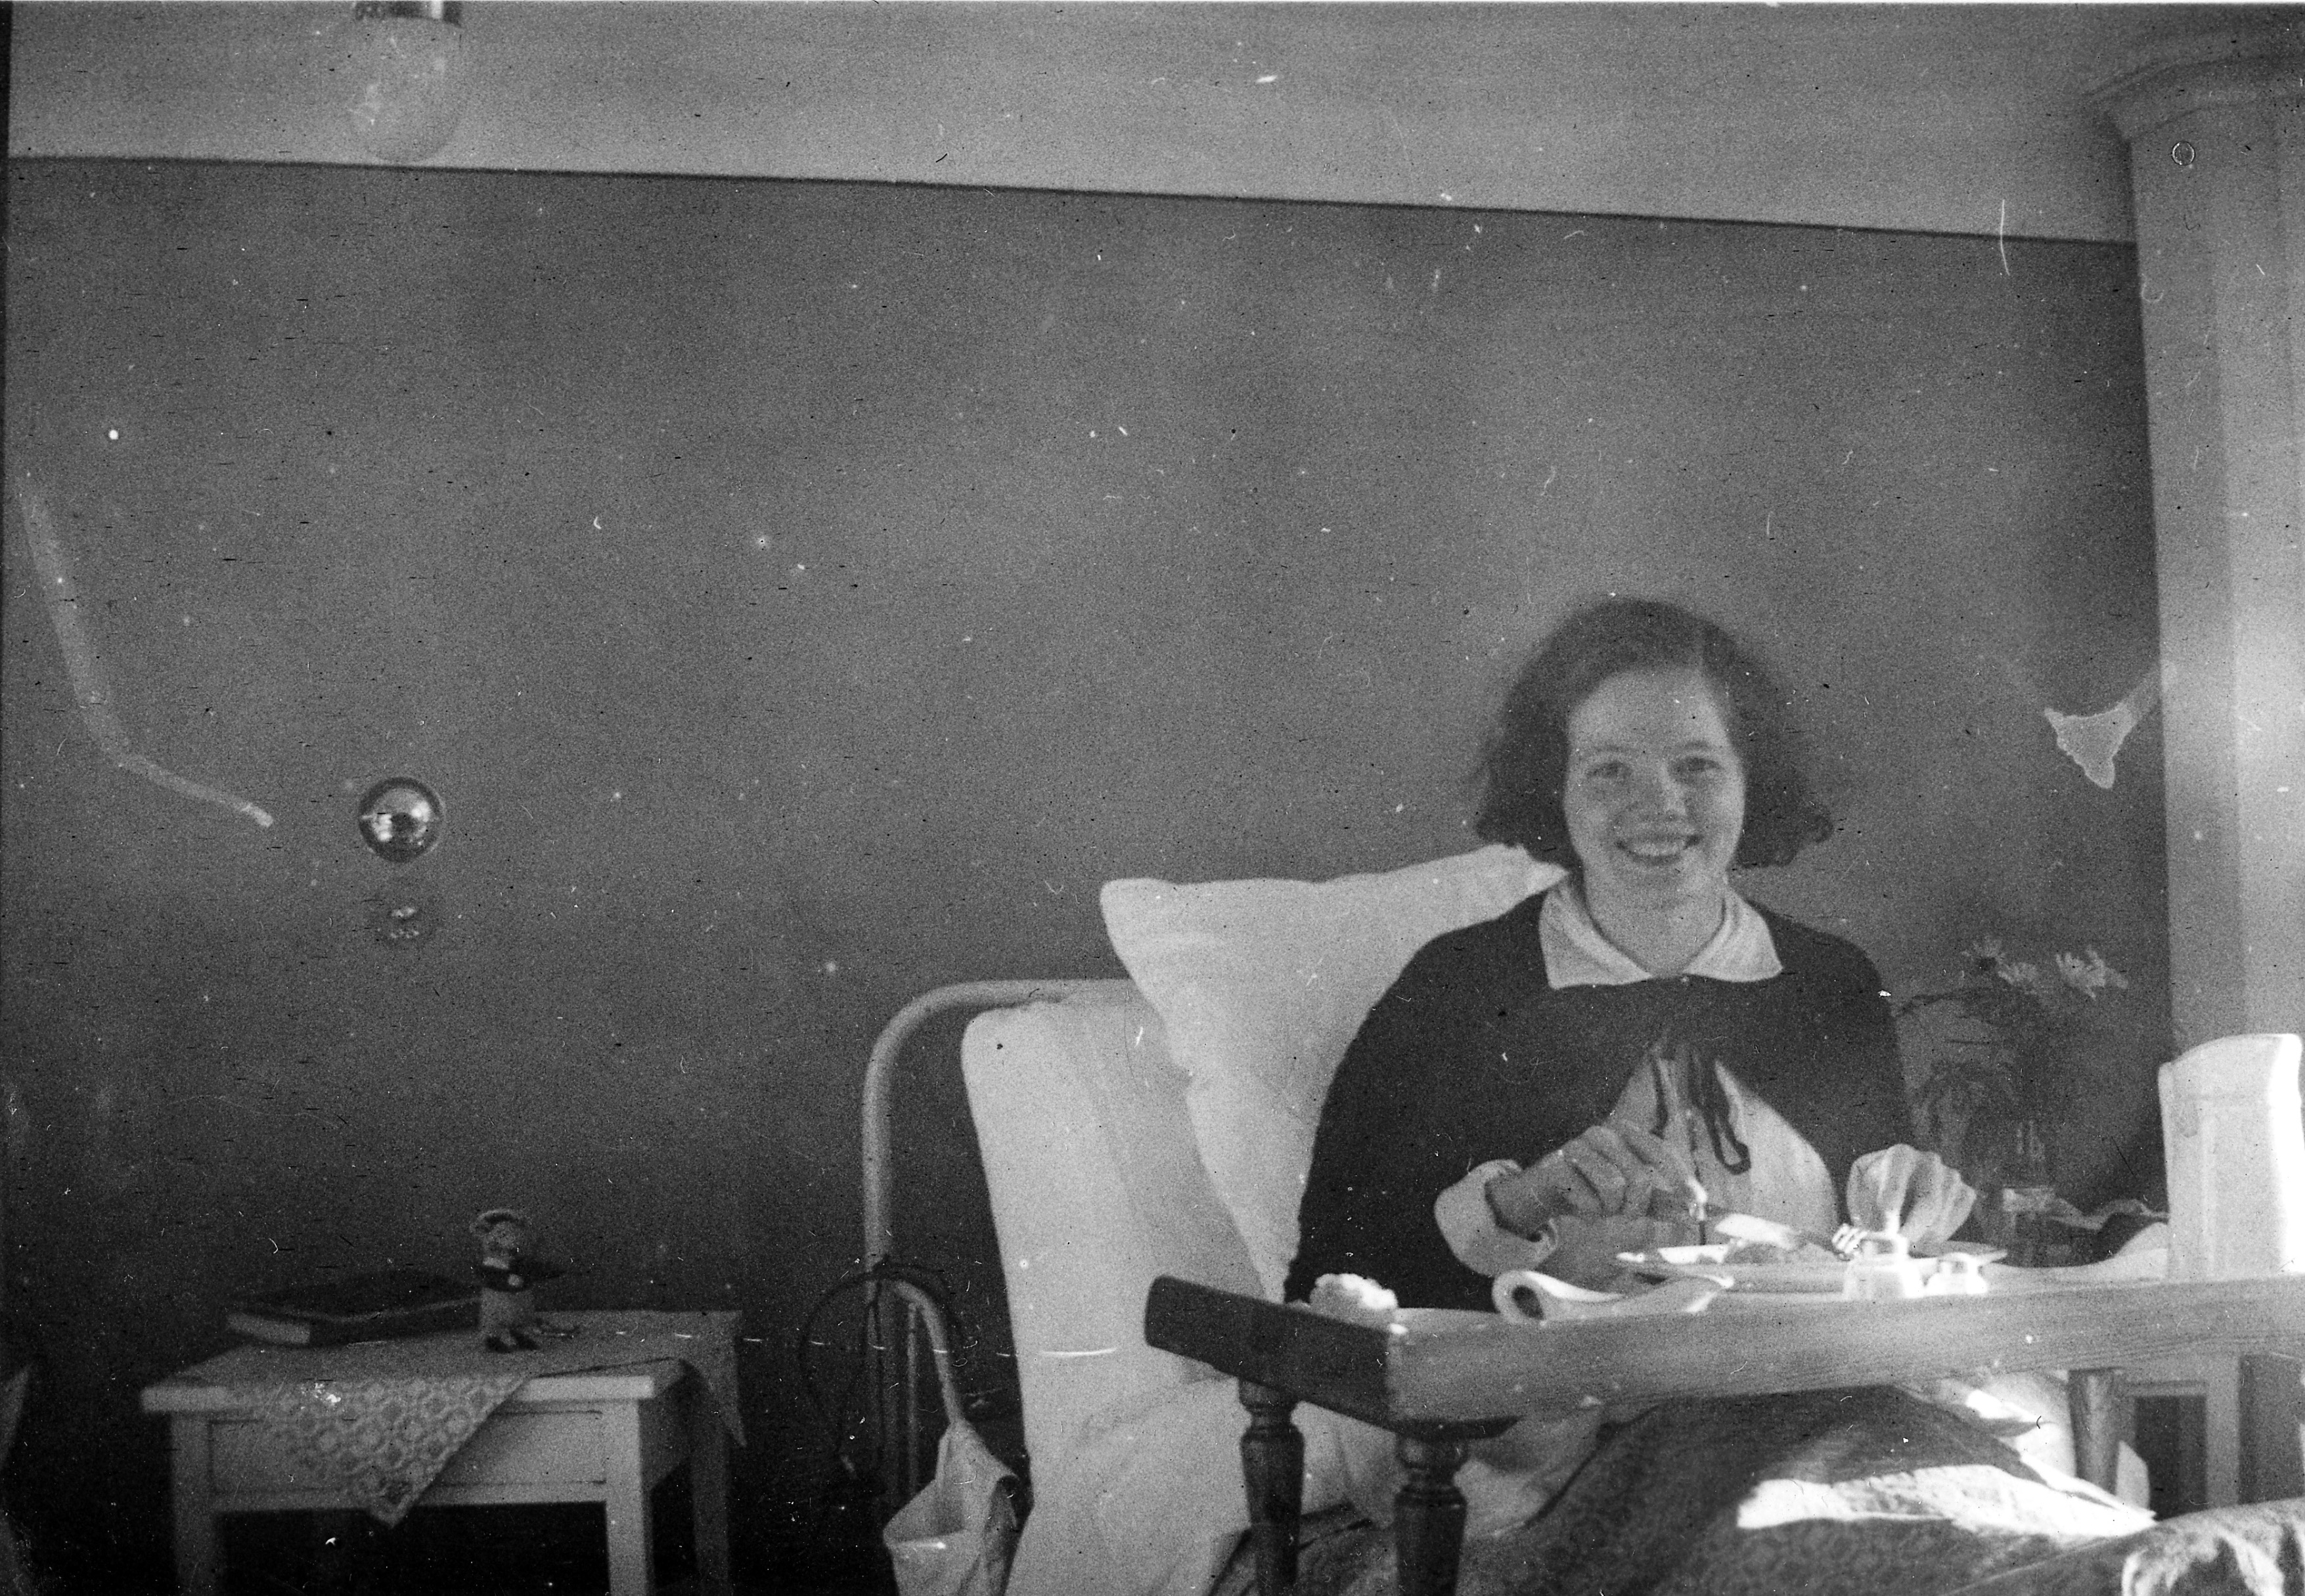 Alva Asp var en glad och kreativ kvinna. Hon dog redan vid 23 års ålder efter att ha drabbats av tuberkulos. Fotot är taget på Spenshults sanatorium där hon bodde i slutet av sitt unga liv, i hopp om att bli frisk i mitten av 1930-talet. 